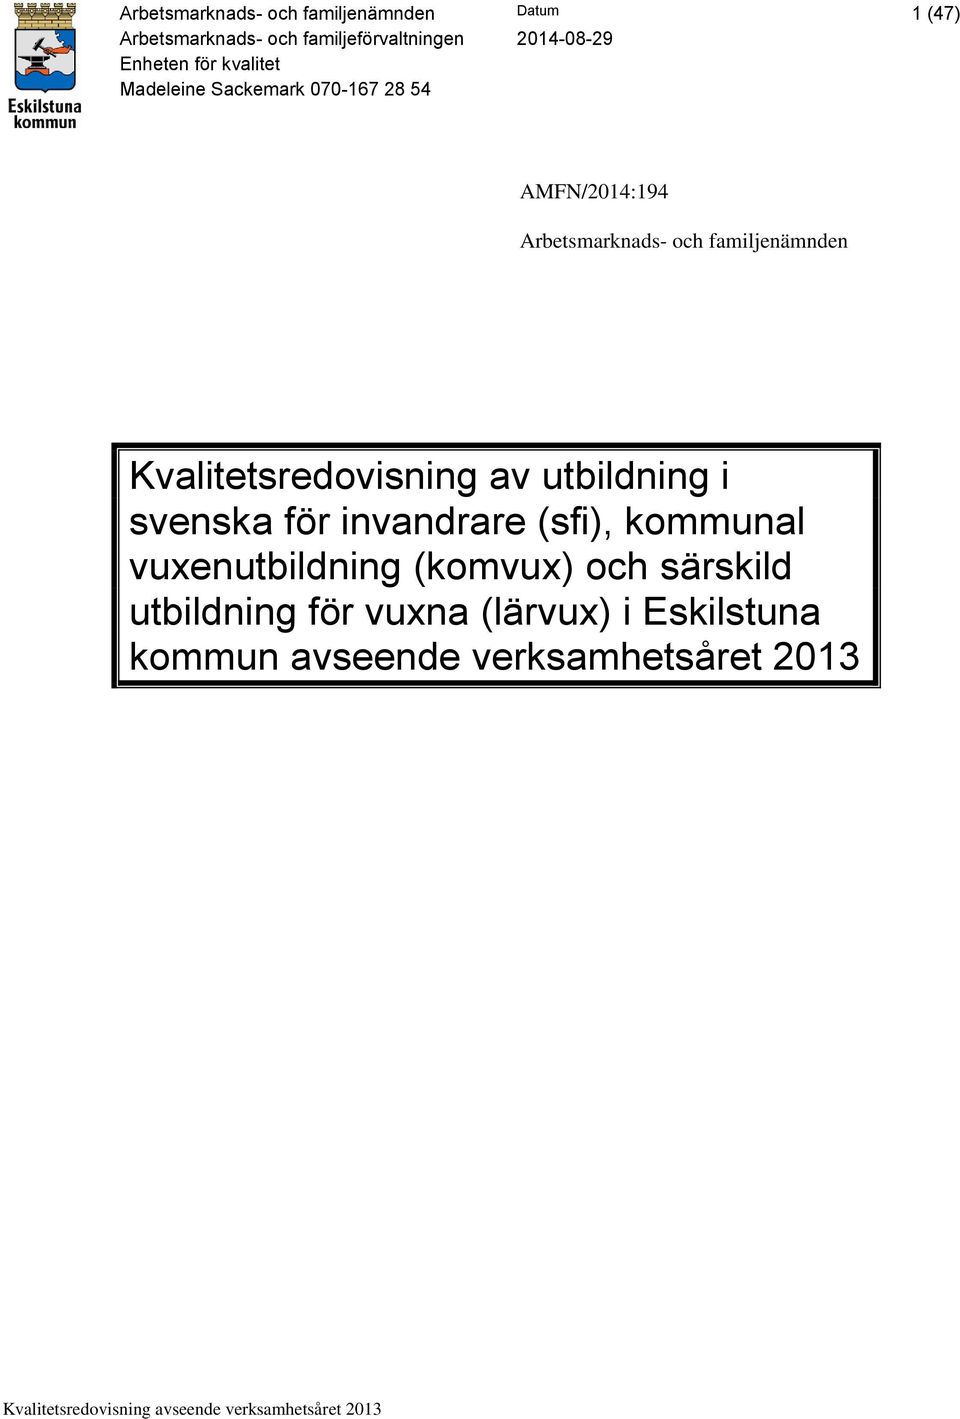 Kvalitetsredovisning av utbildning i svenska för invandrare (sfi), kommunal vuxenutbildning